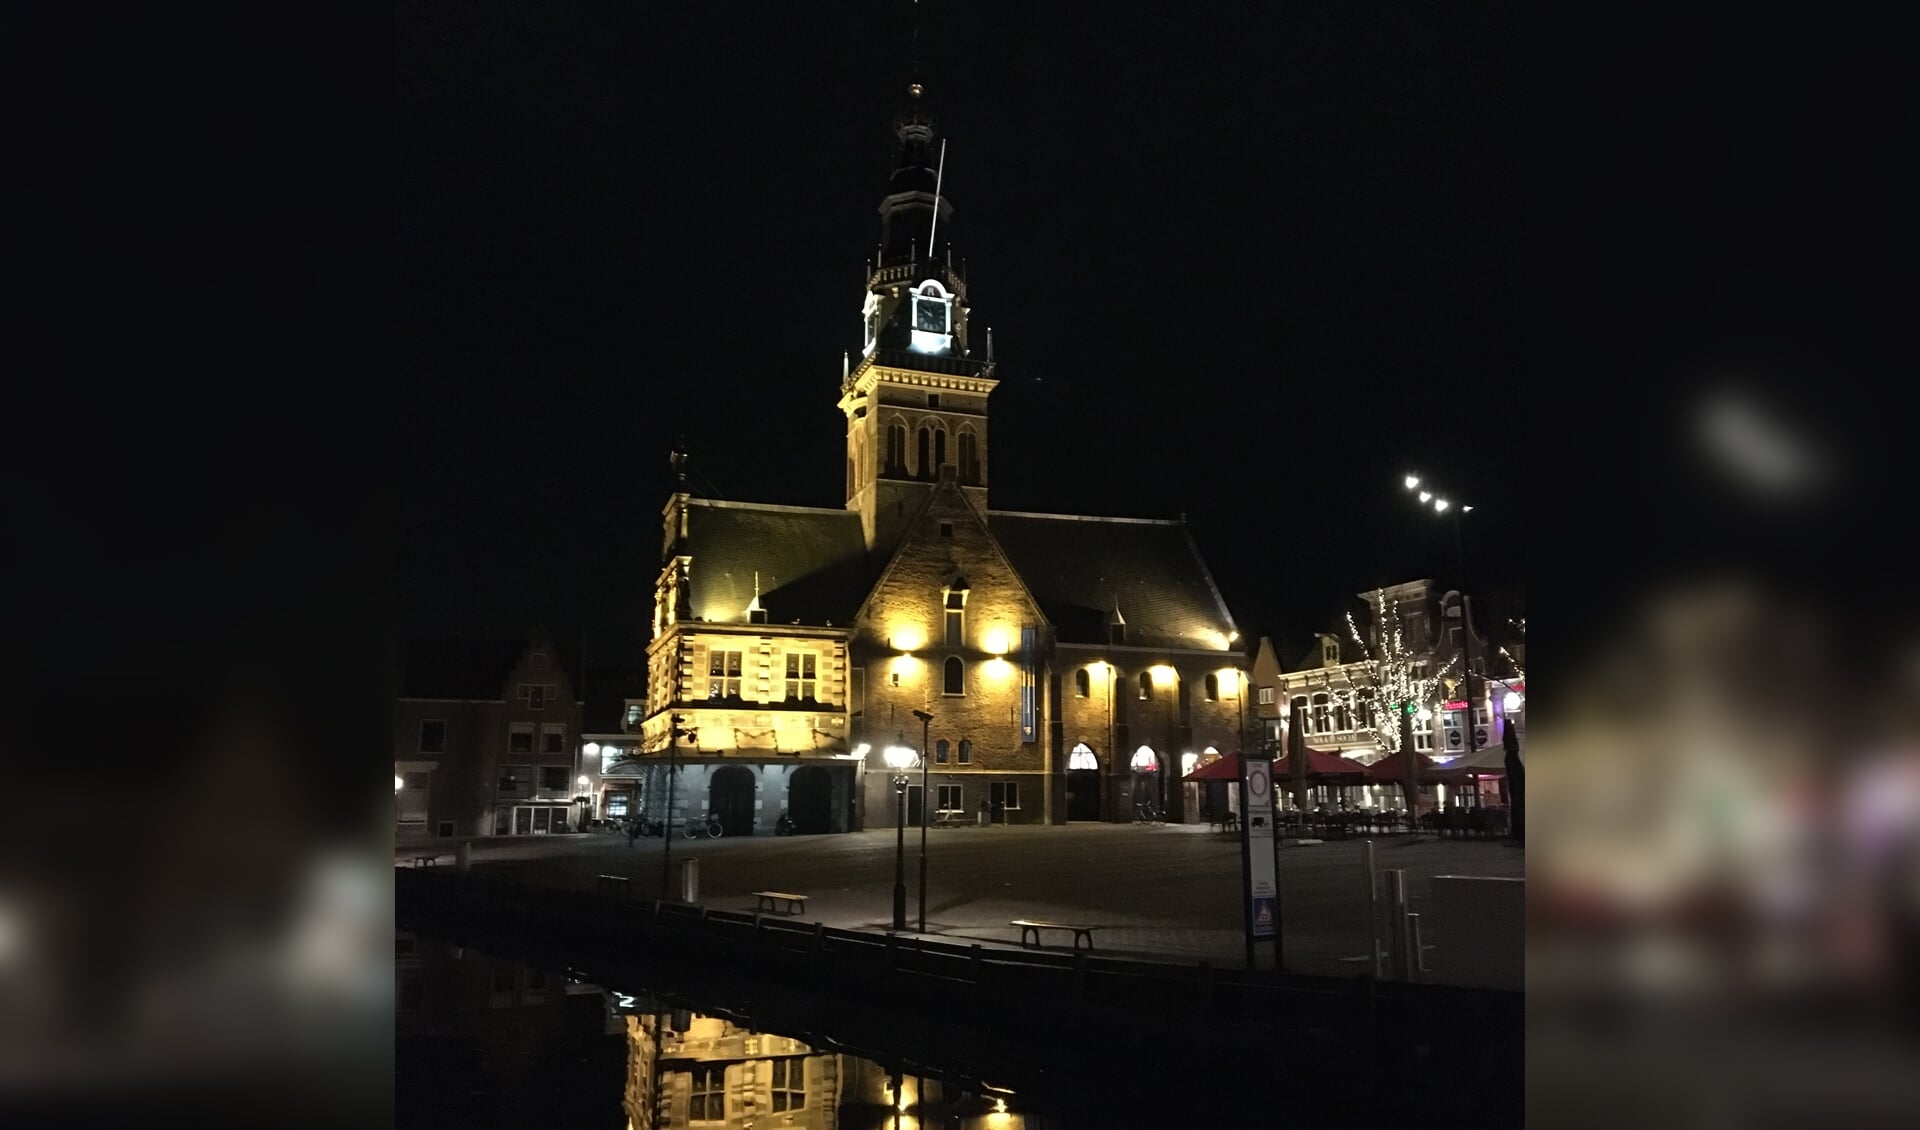 Wandelen door het fraai verlichte centrum van Alkmaar.